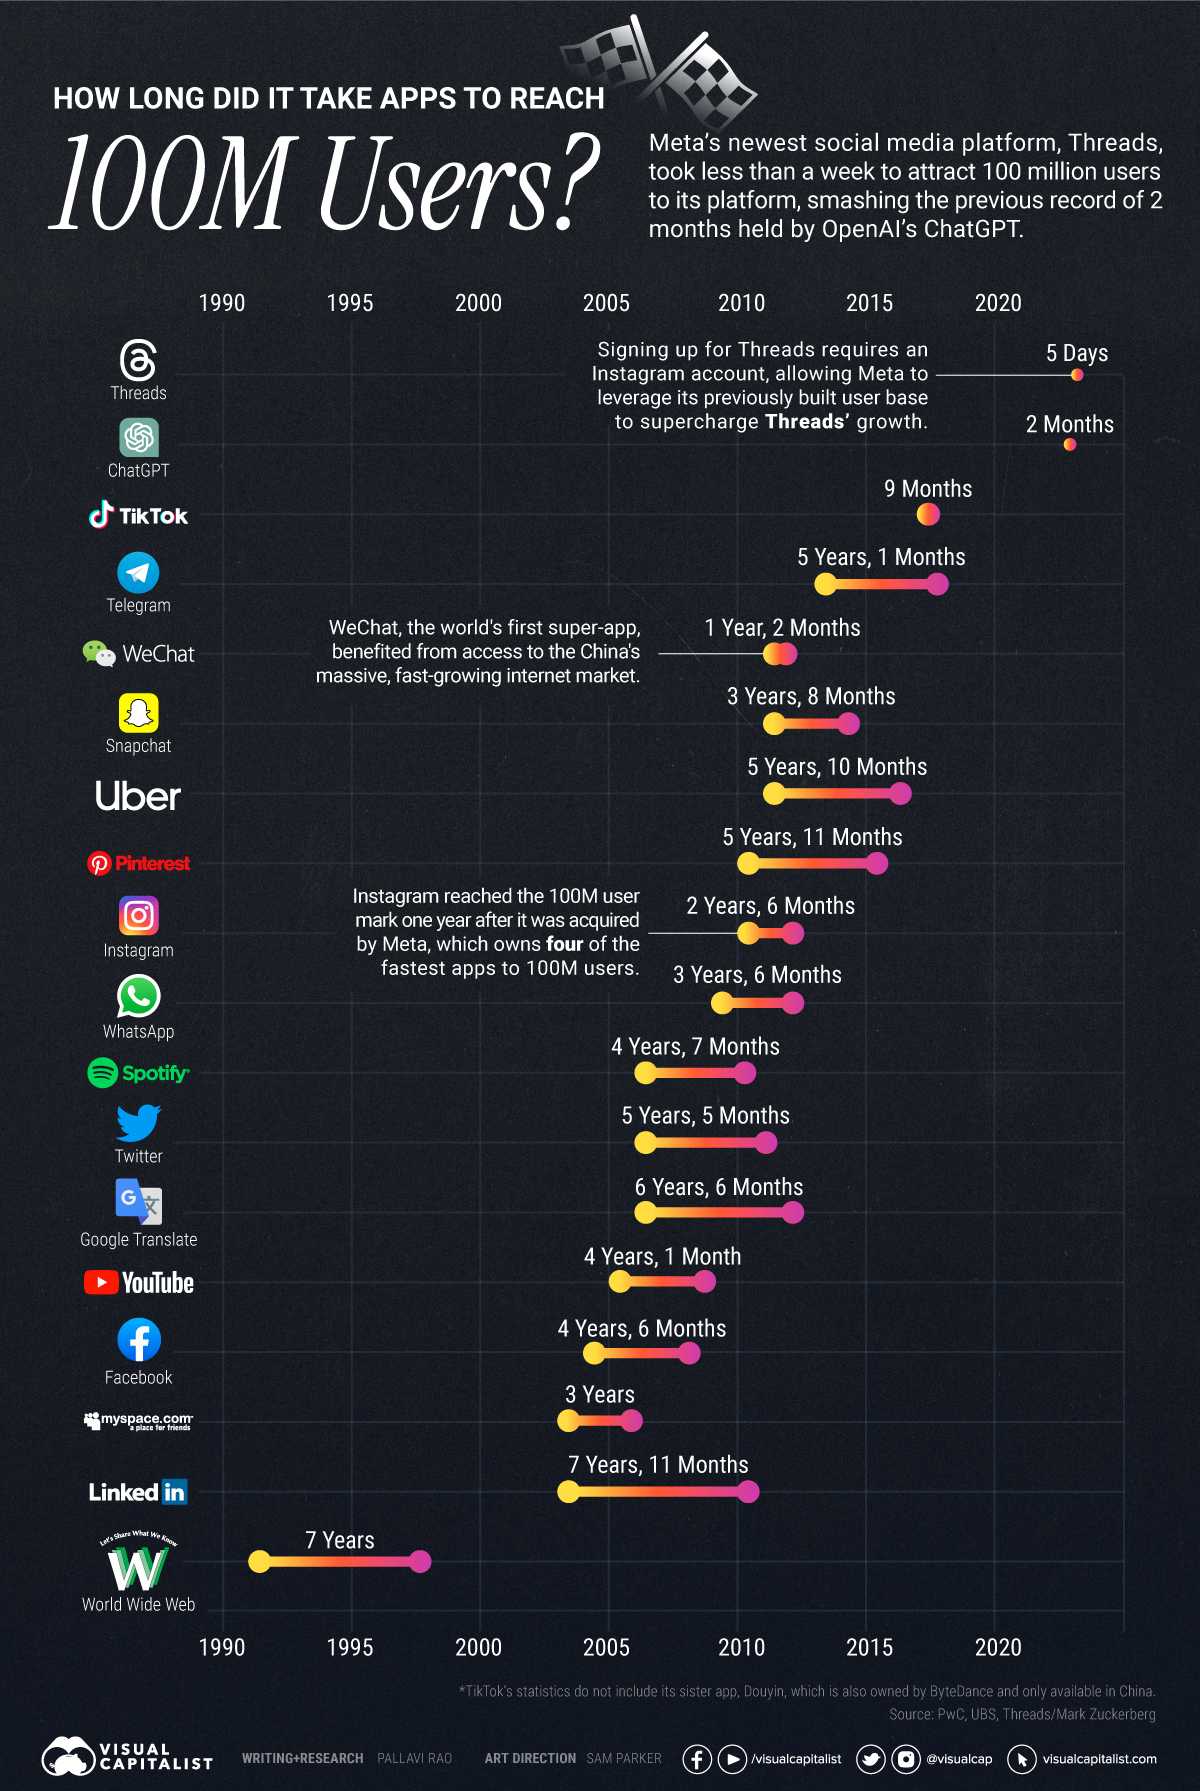 سریعترین زمان رسیدن به 100 میلیون کاربر مربوط به کدام شبکه اجتماعی است؟